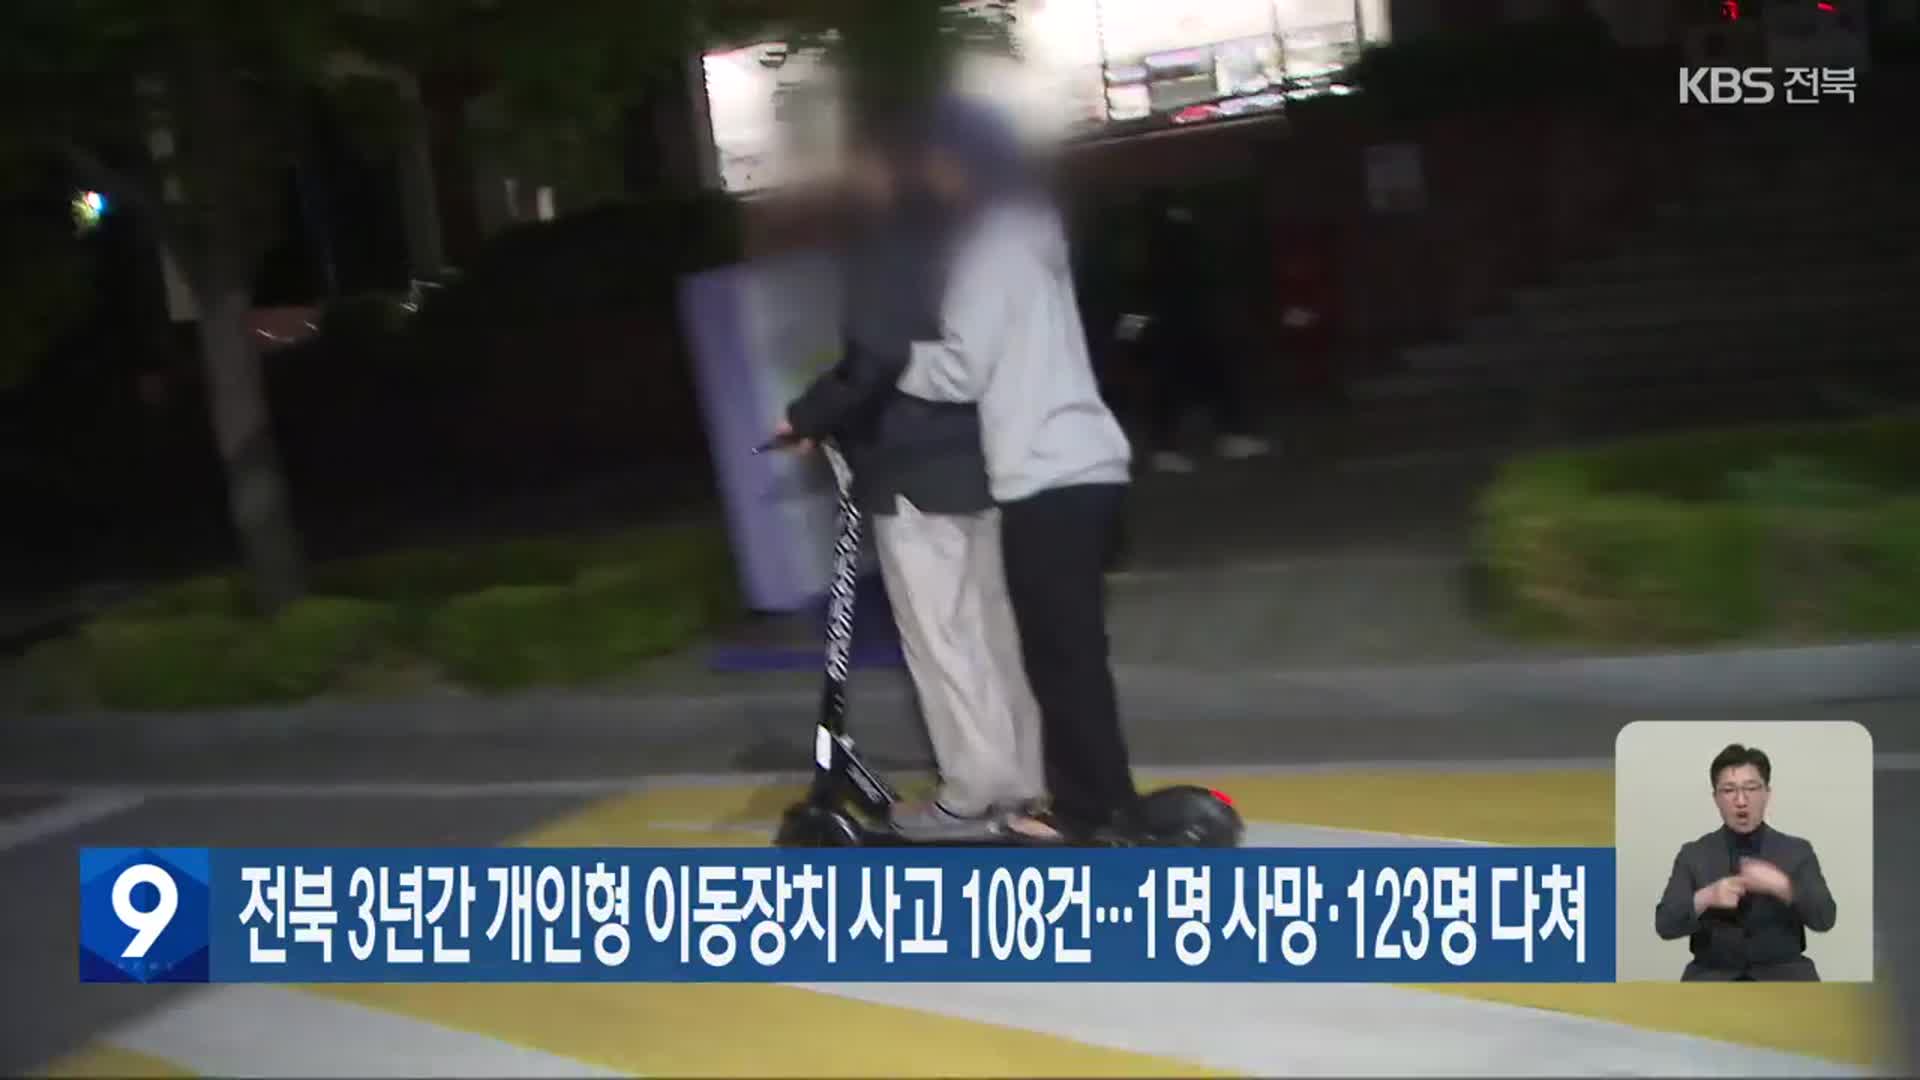 전북 3년간 개인형 이동장치 사고 108건…1명 사망·123명 다쳐